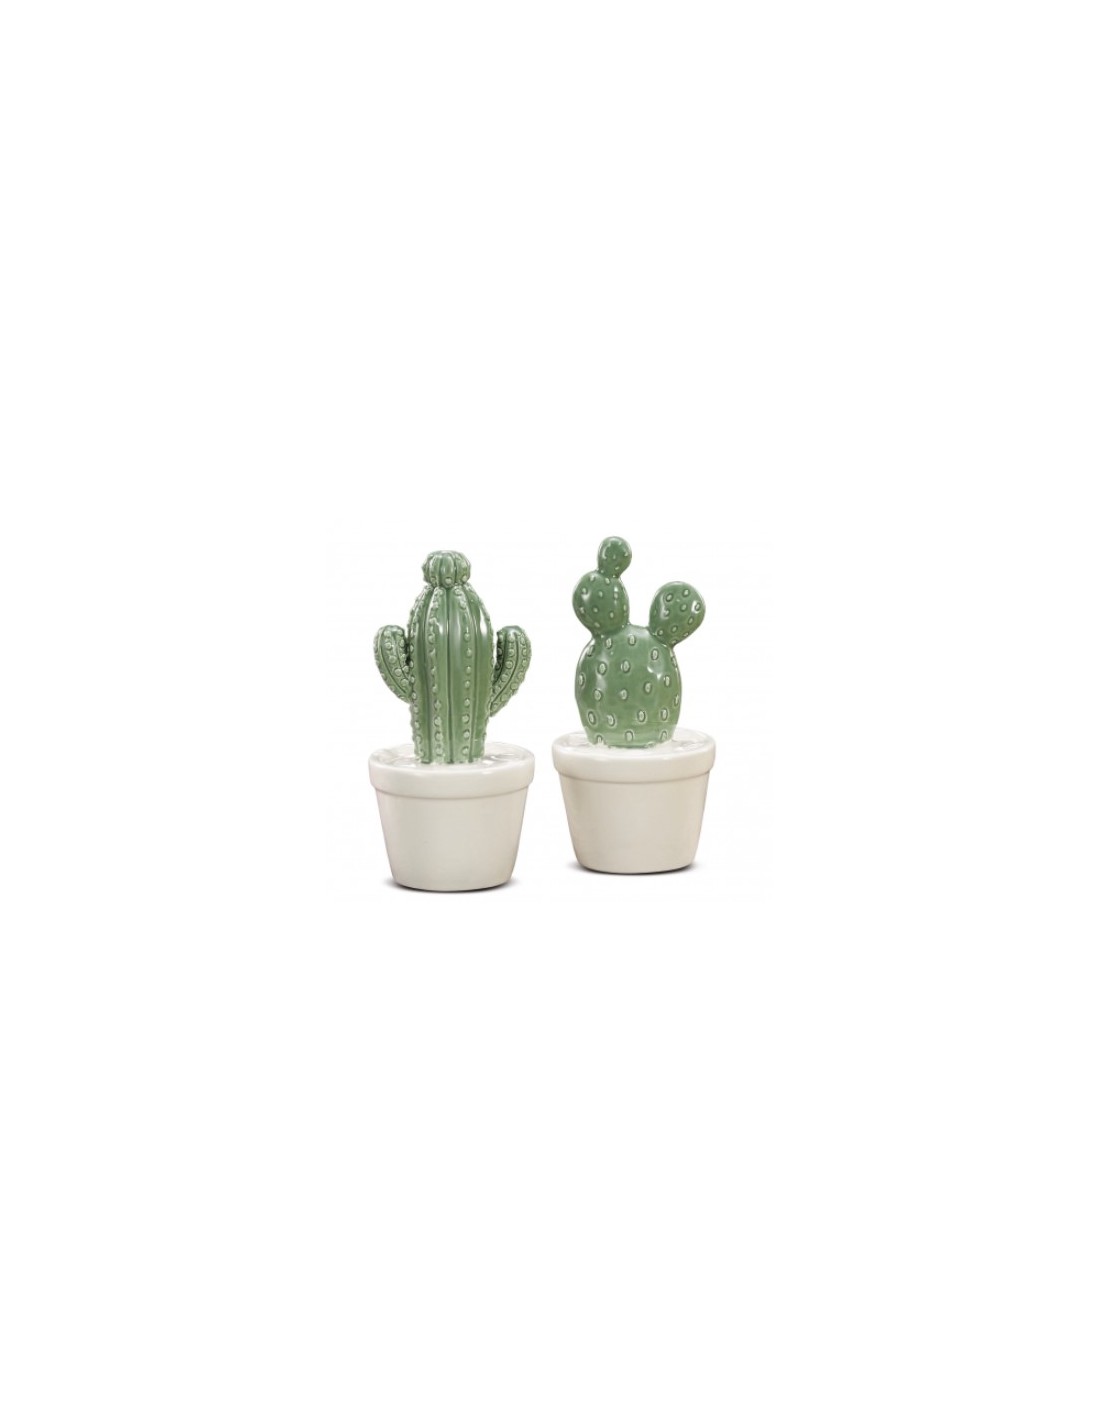 Comprare figura di cactus per decorare